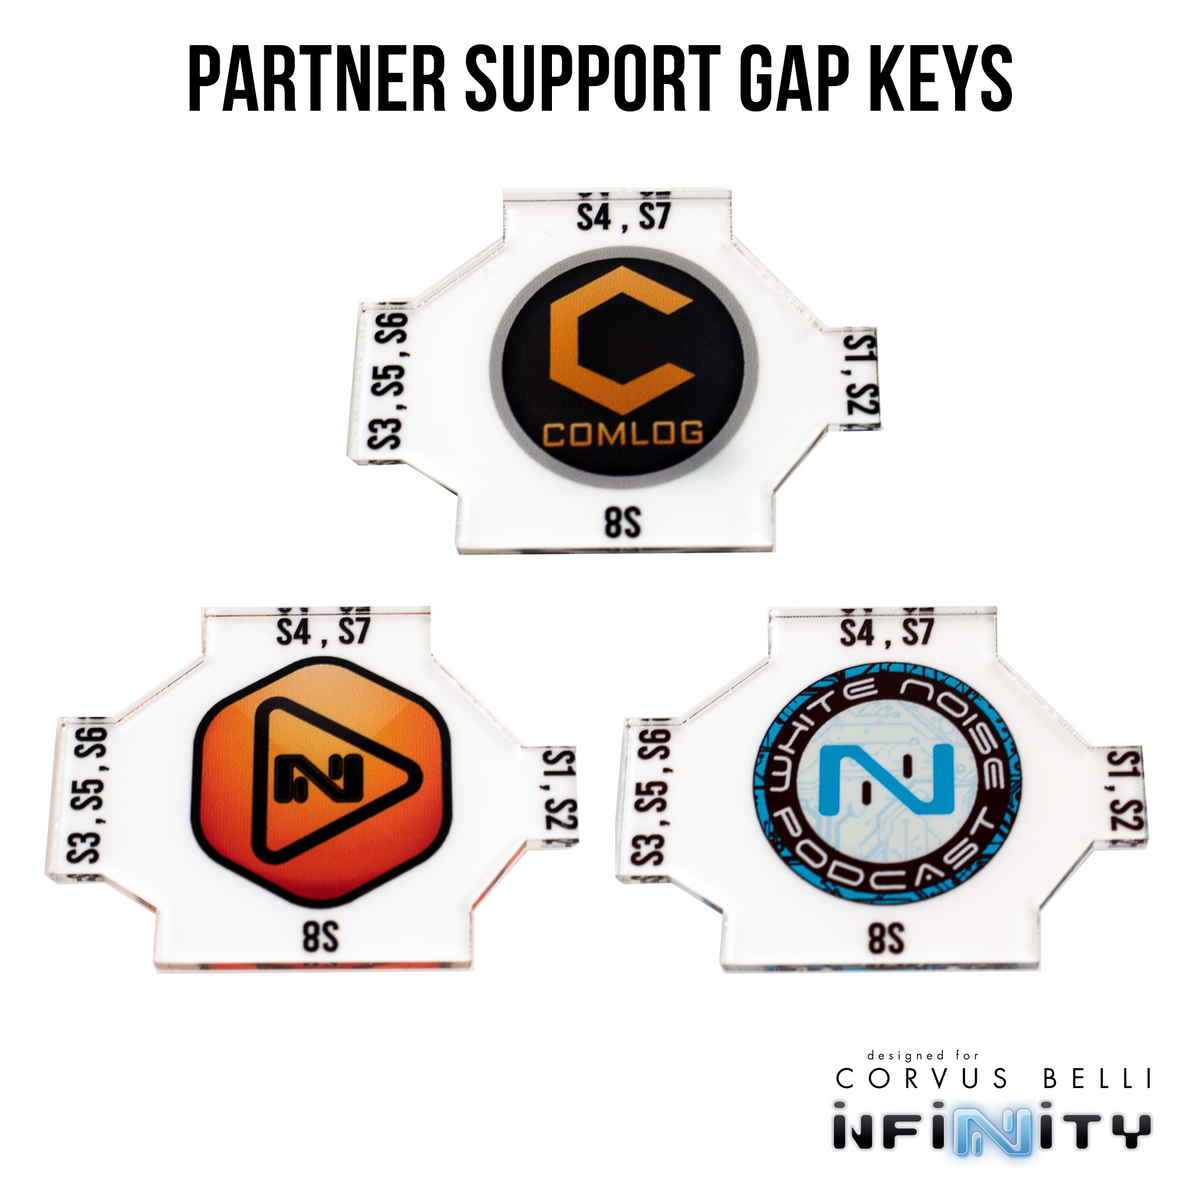 Partner Support Gap Keys